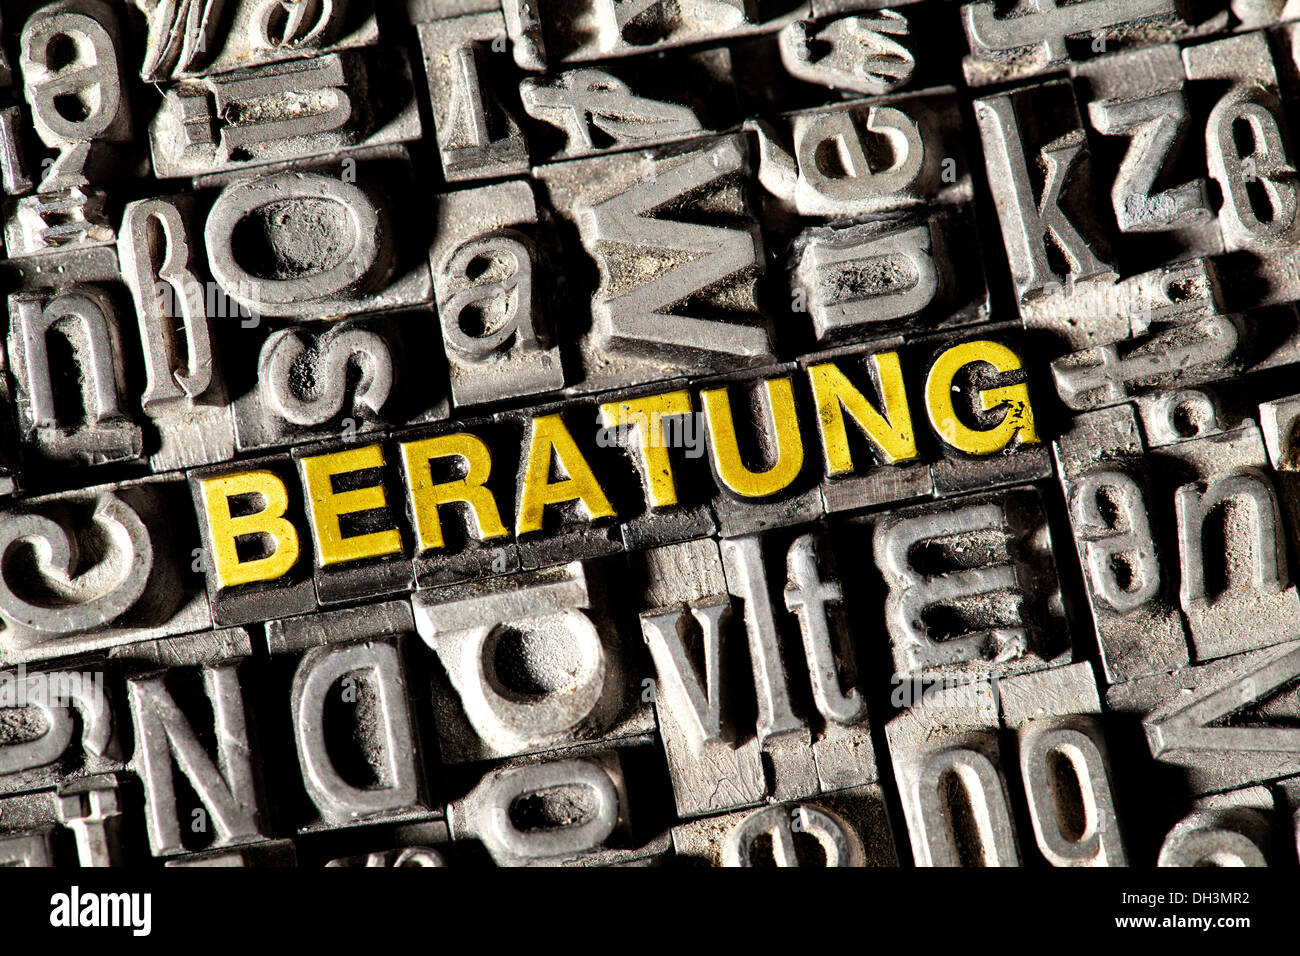 Vecchio portano lettere che compongono la parola "BERATUNG', Tedesco per 'consulenza' Foto Stock